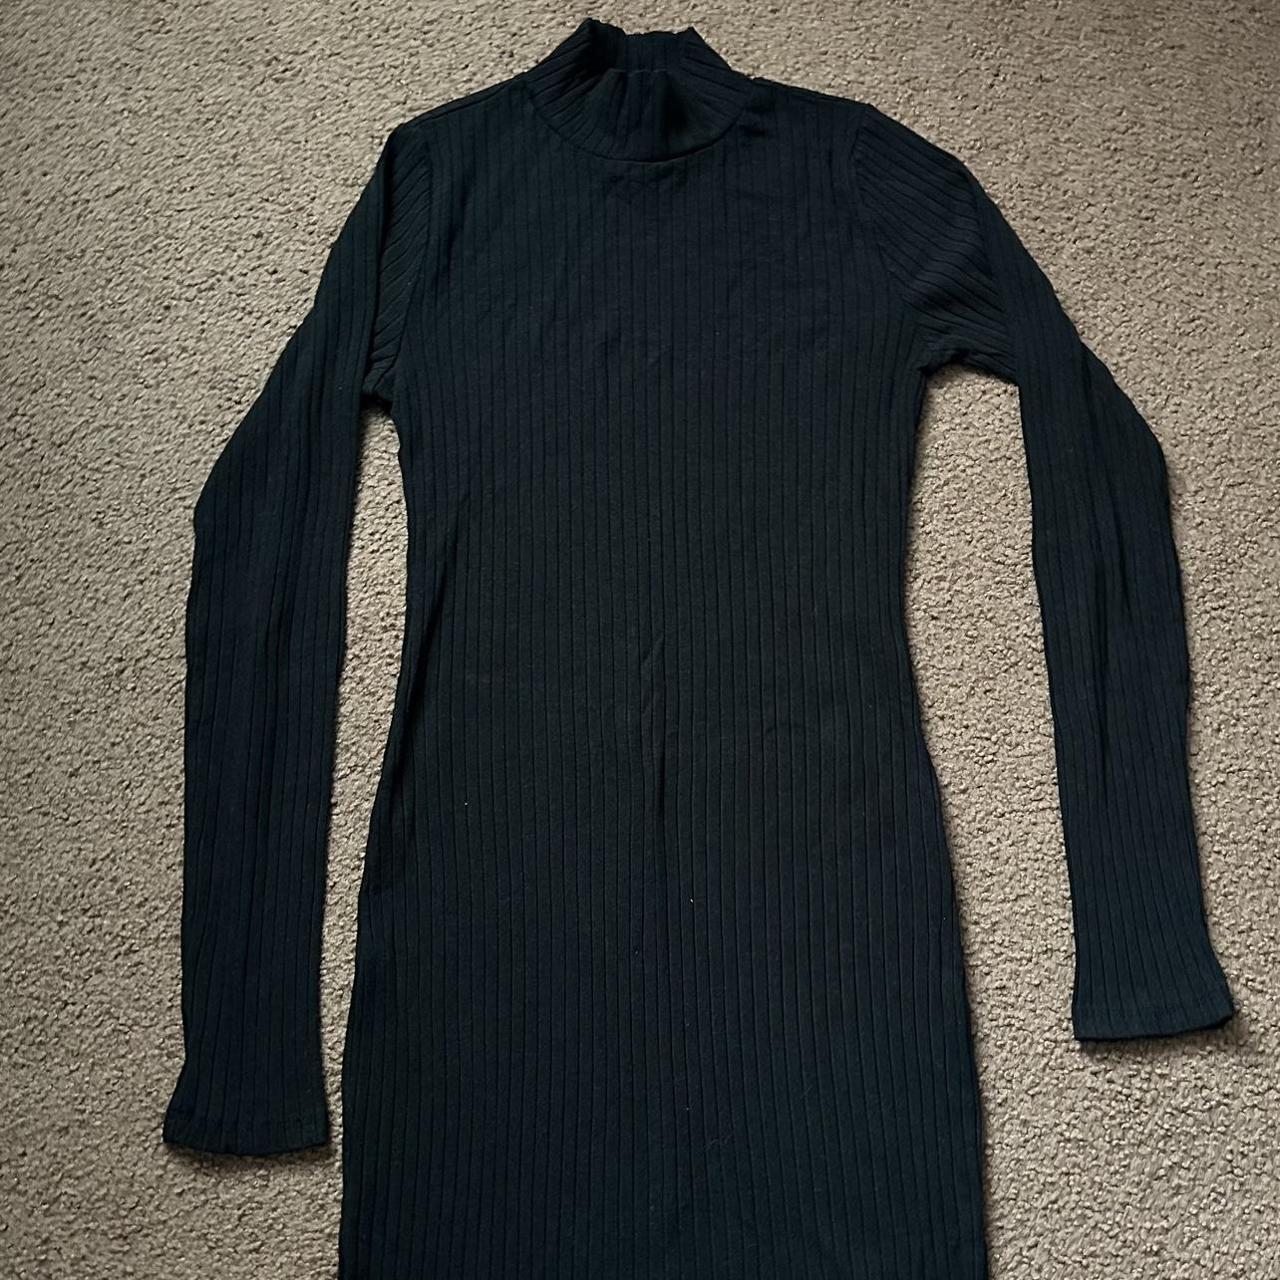 Black turtleneck long sleeve dress in size small,... - Depop